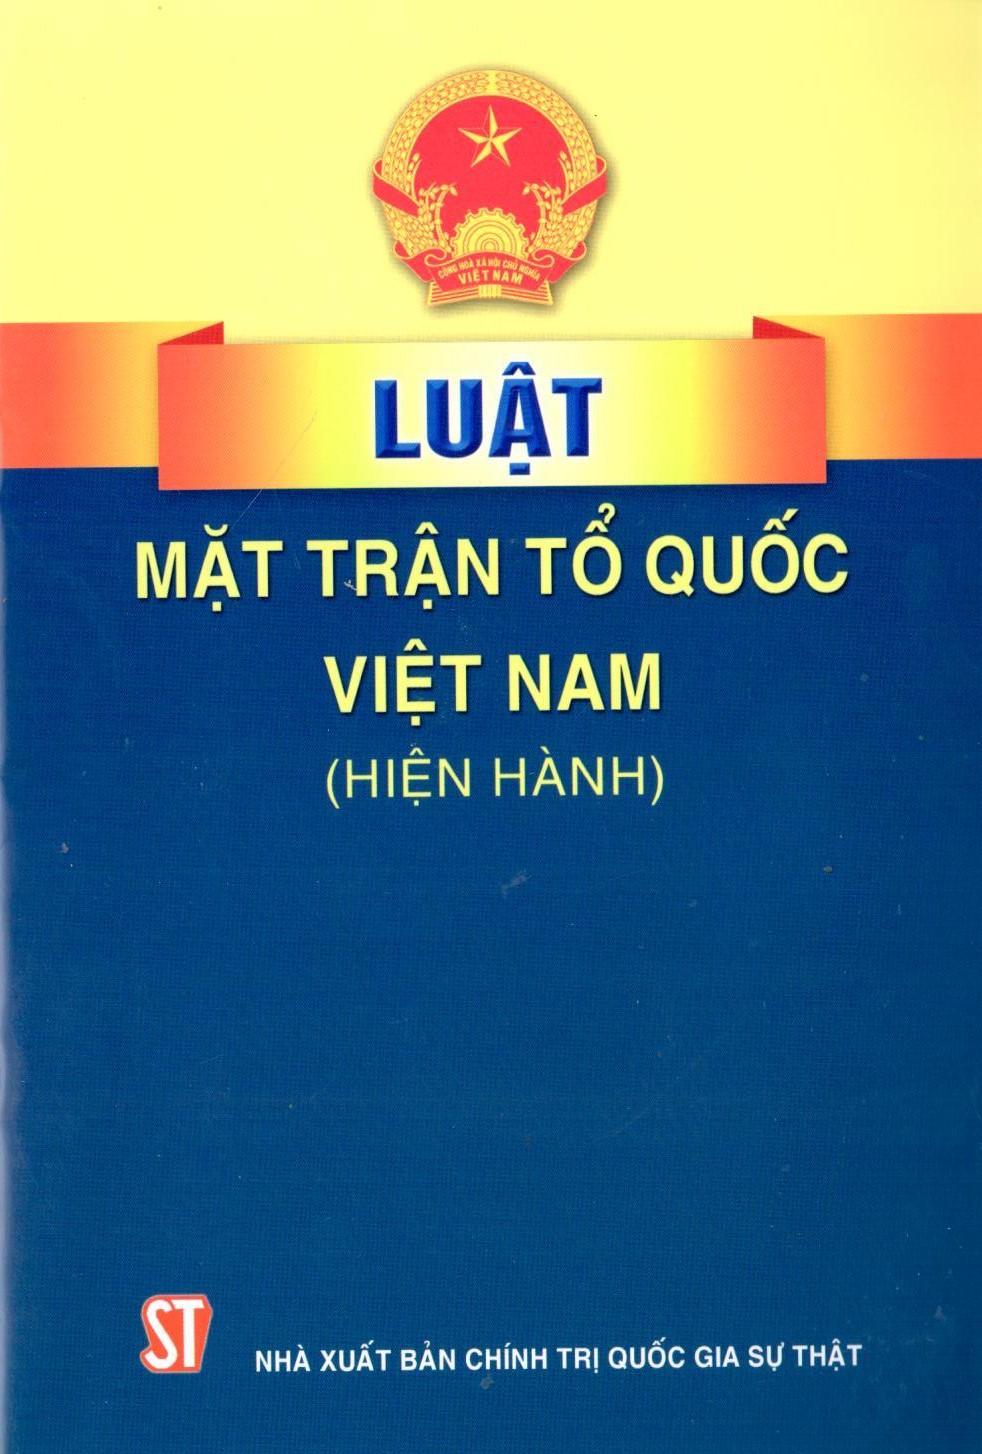 Luật Mặt trận Tổ quốc Việt Nam (hiện hành)